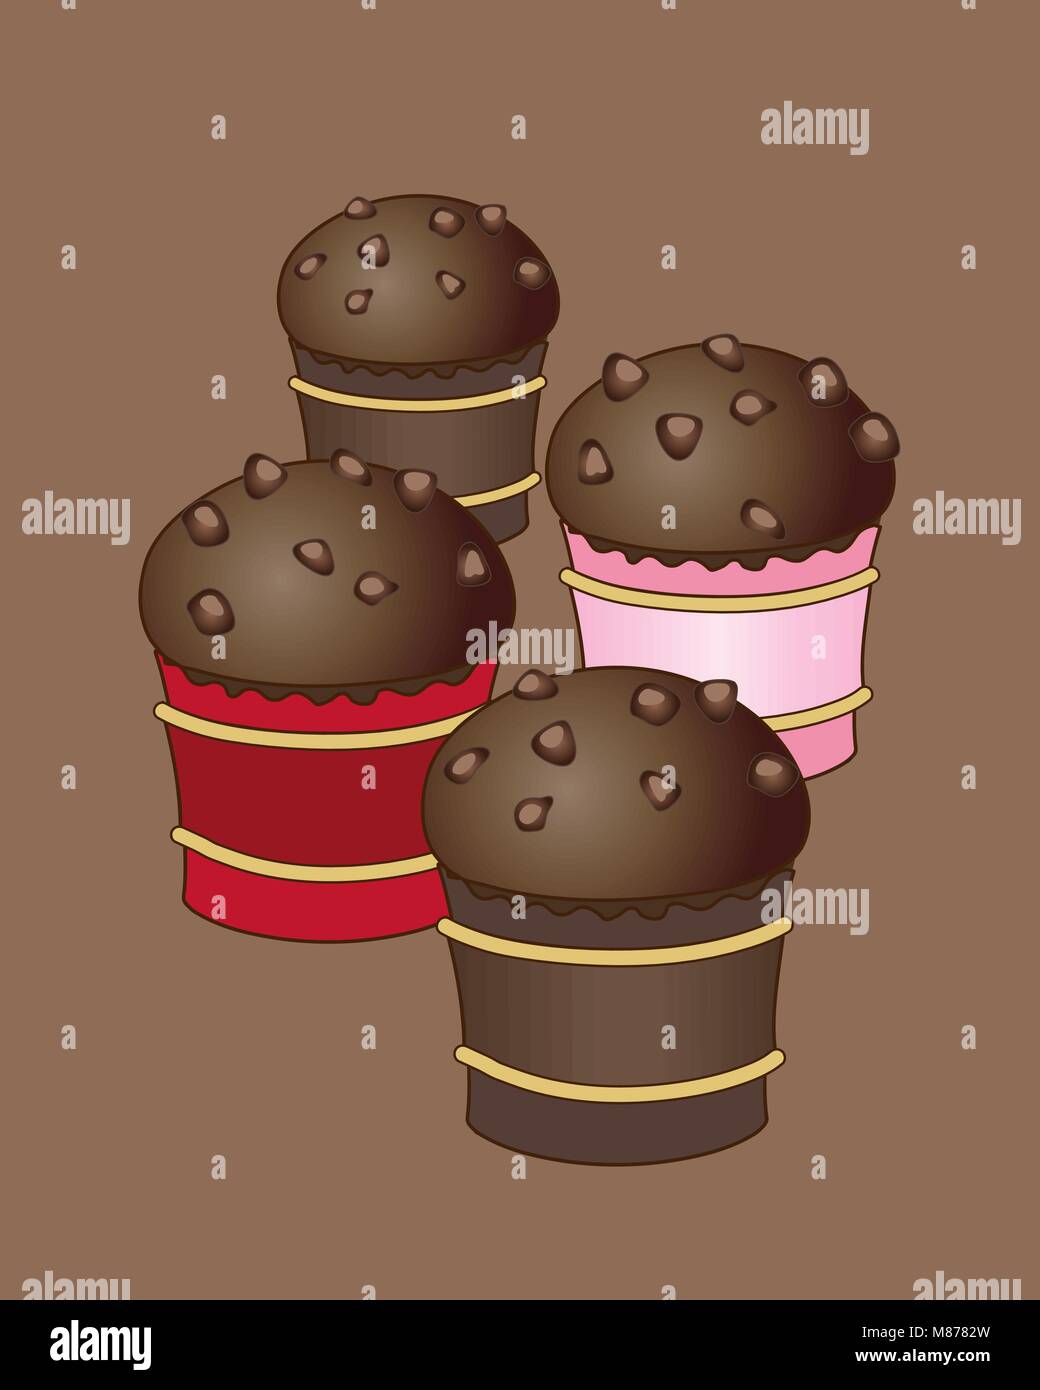 Un vecteur illustration en format eps 10 de quelques petits pains au chocolat avec des éclats de chocolat sur un fond brun Illustration de Vecteur